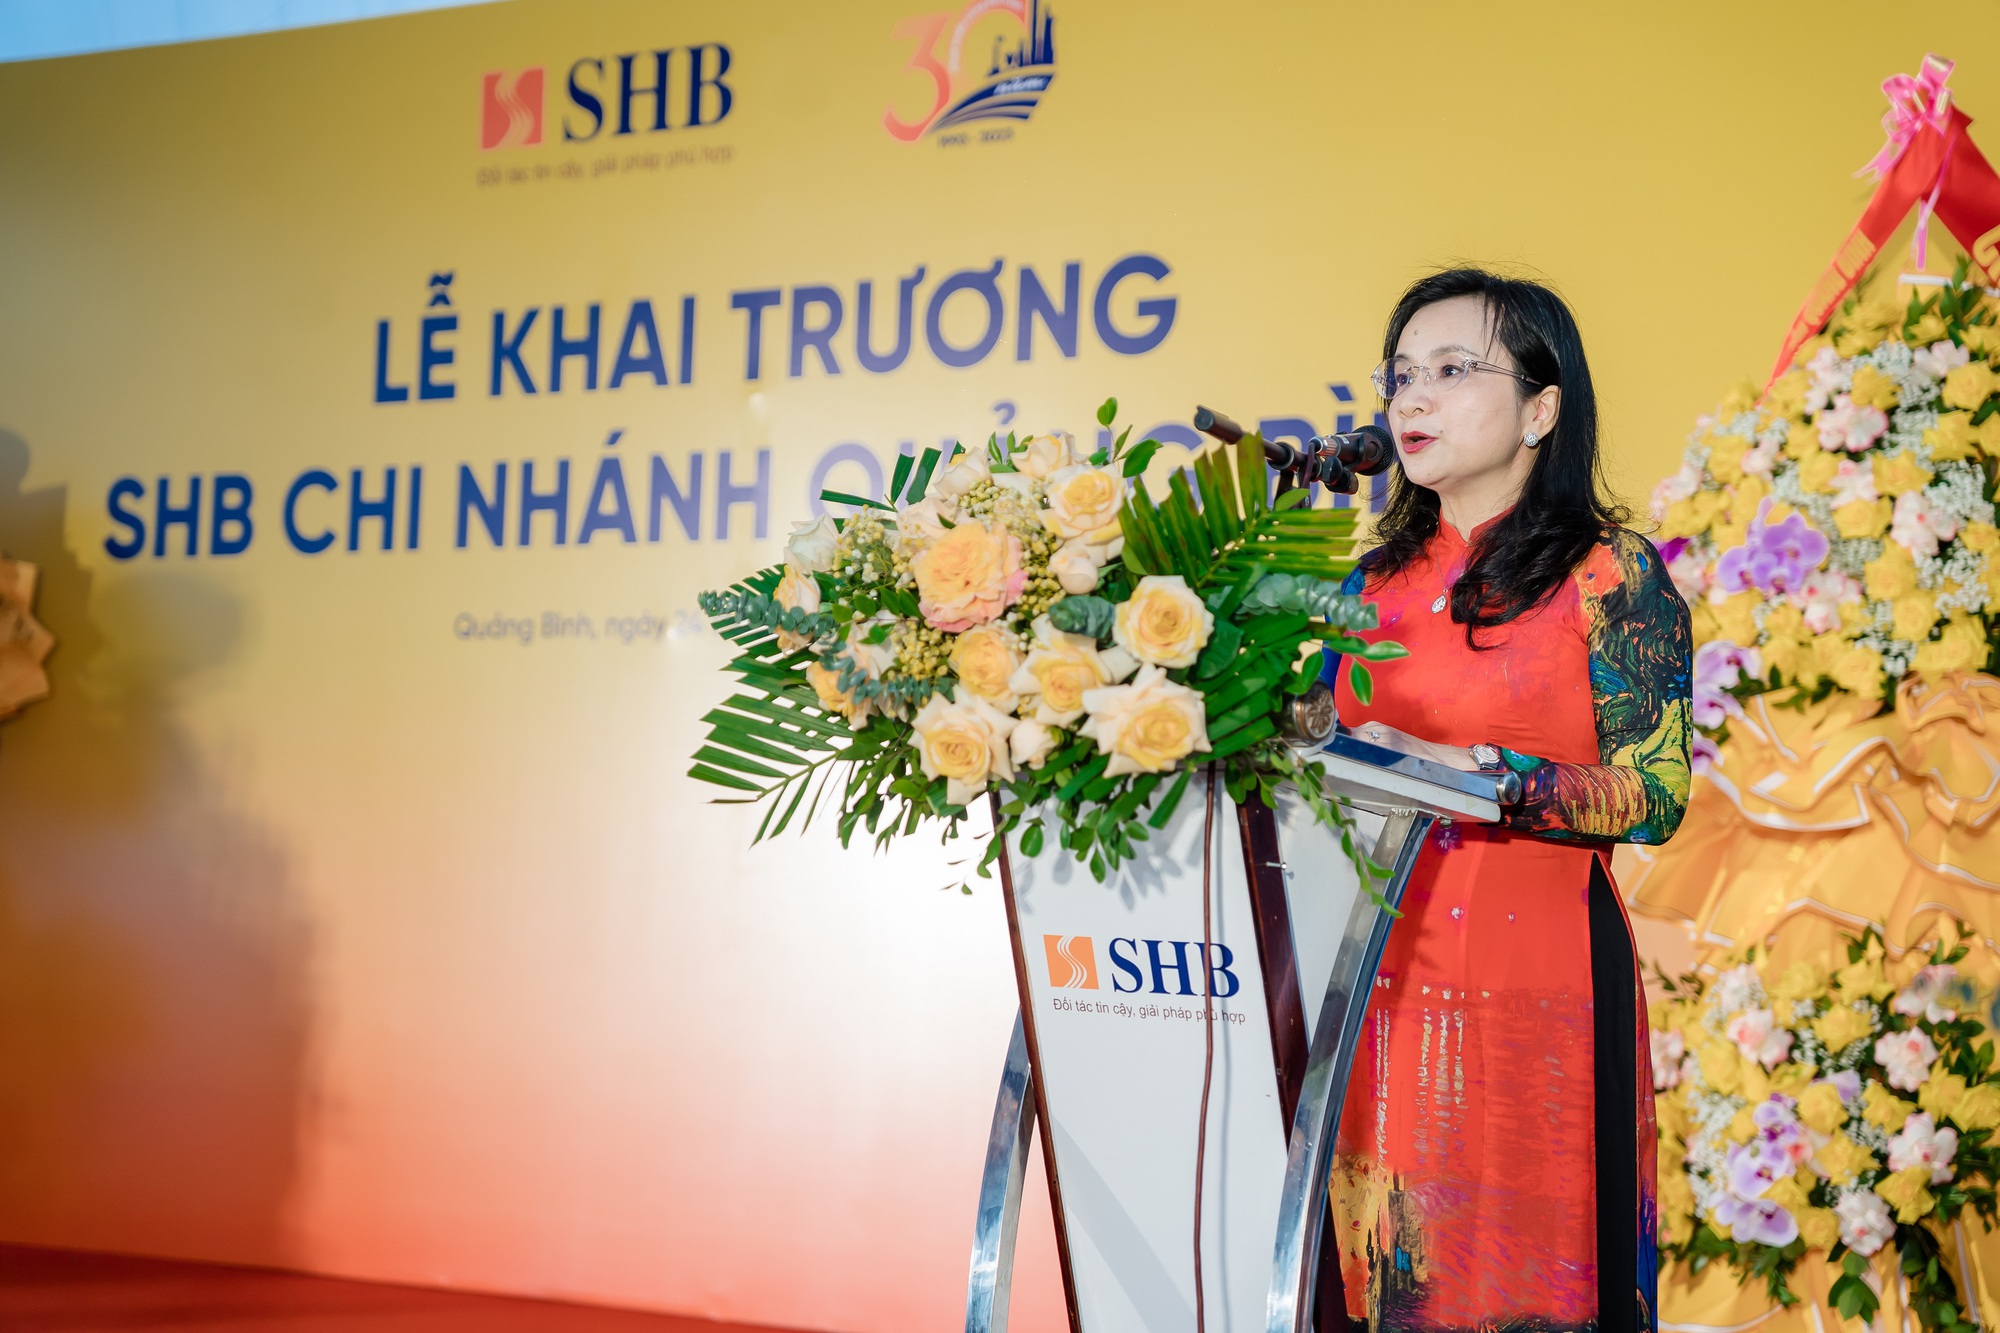 Tăng cường phát triển mạng lưới, SHB khai trương chi nhánh tại Quảng Bình - Ảnh 2.